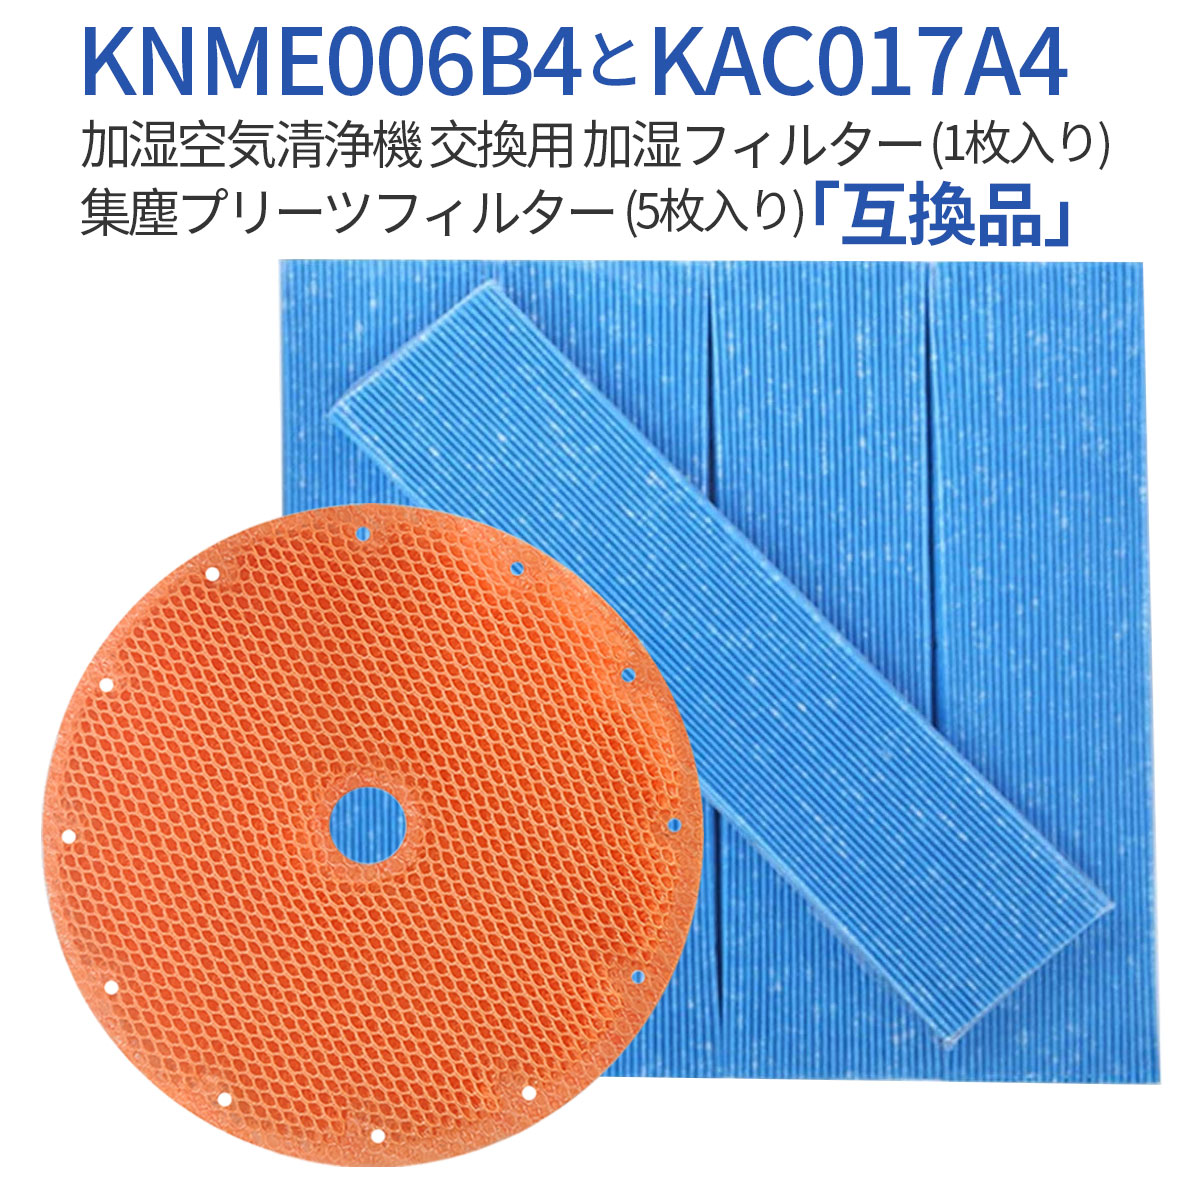 KAC017A4 KNME006B4 フィルター ダイキン加湿空気清浄機 プリーツフィルター 5枚入り kac017a4 (KAC006A4の後継品) 加湿フィルター knme006b4（KNME006A4の後継品）交換用フィルターセット (1セット) 純正品ではなく互換品です